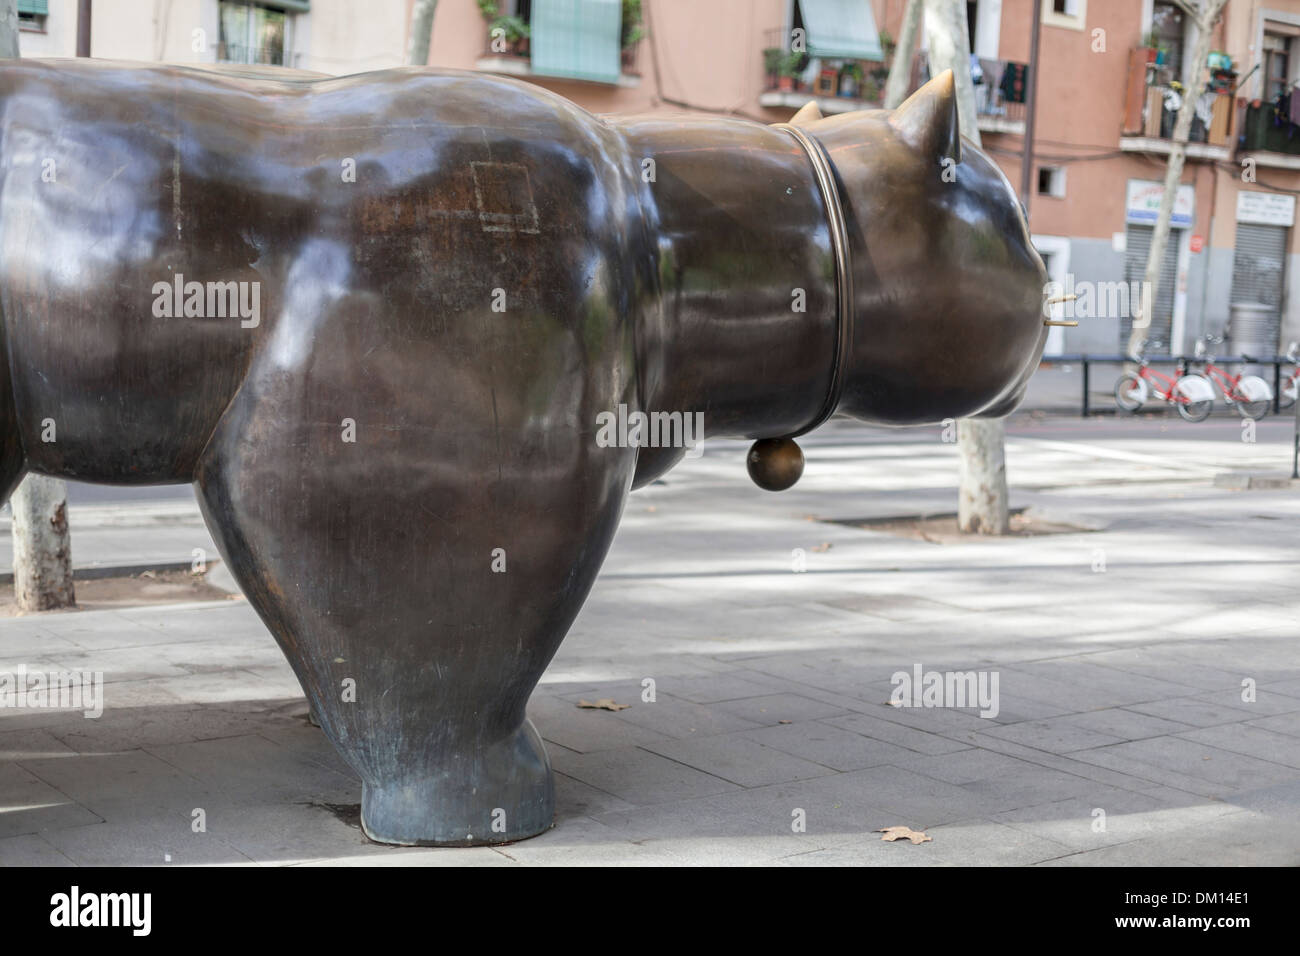 Sculpture "Gato", by Fernando Botero,located in Rambla del Raval, Barcelona. Stock Photo